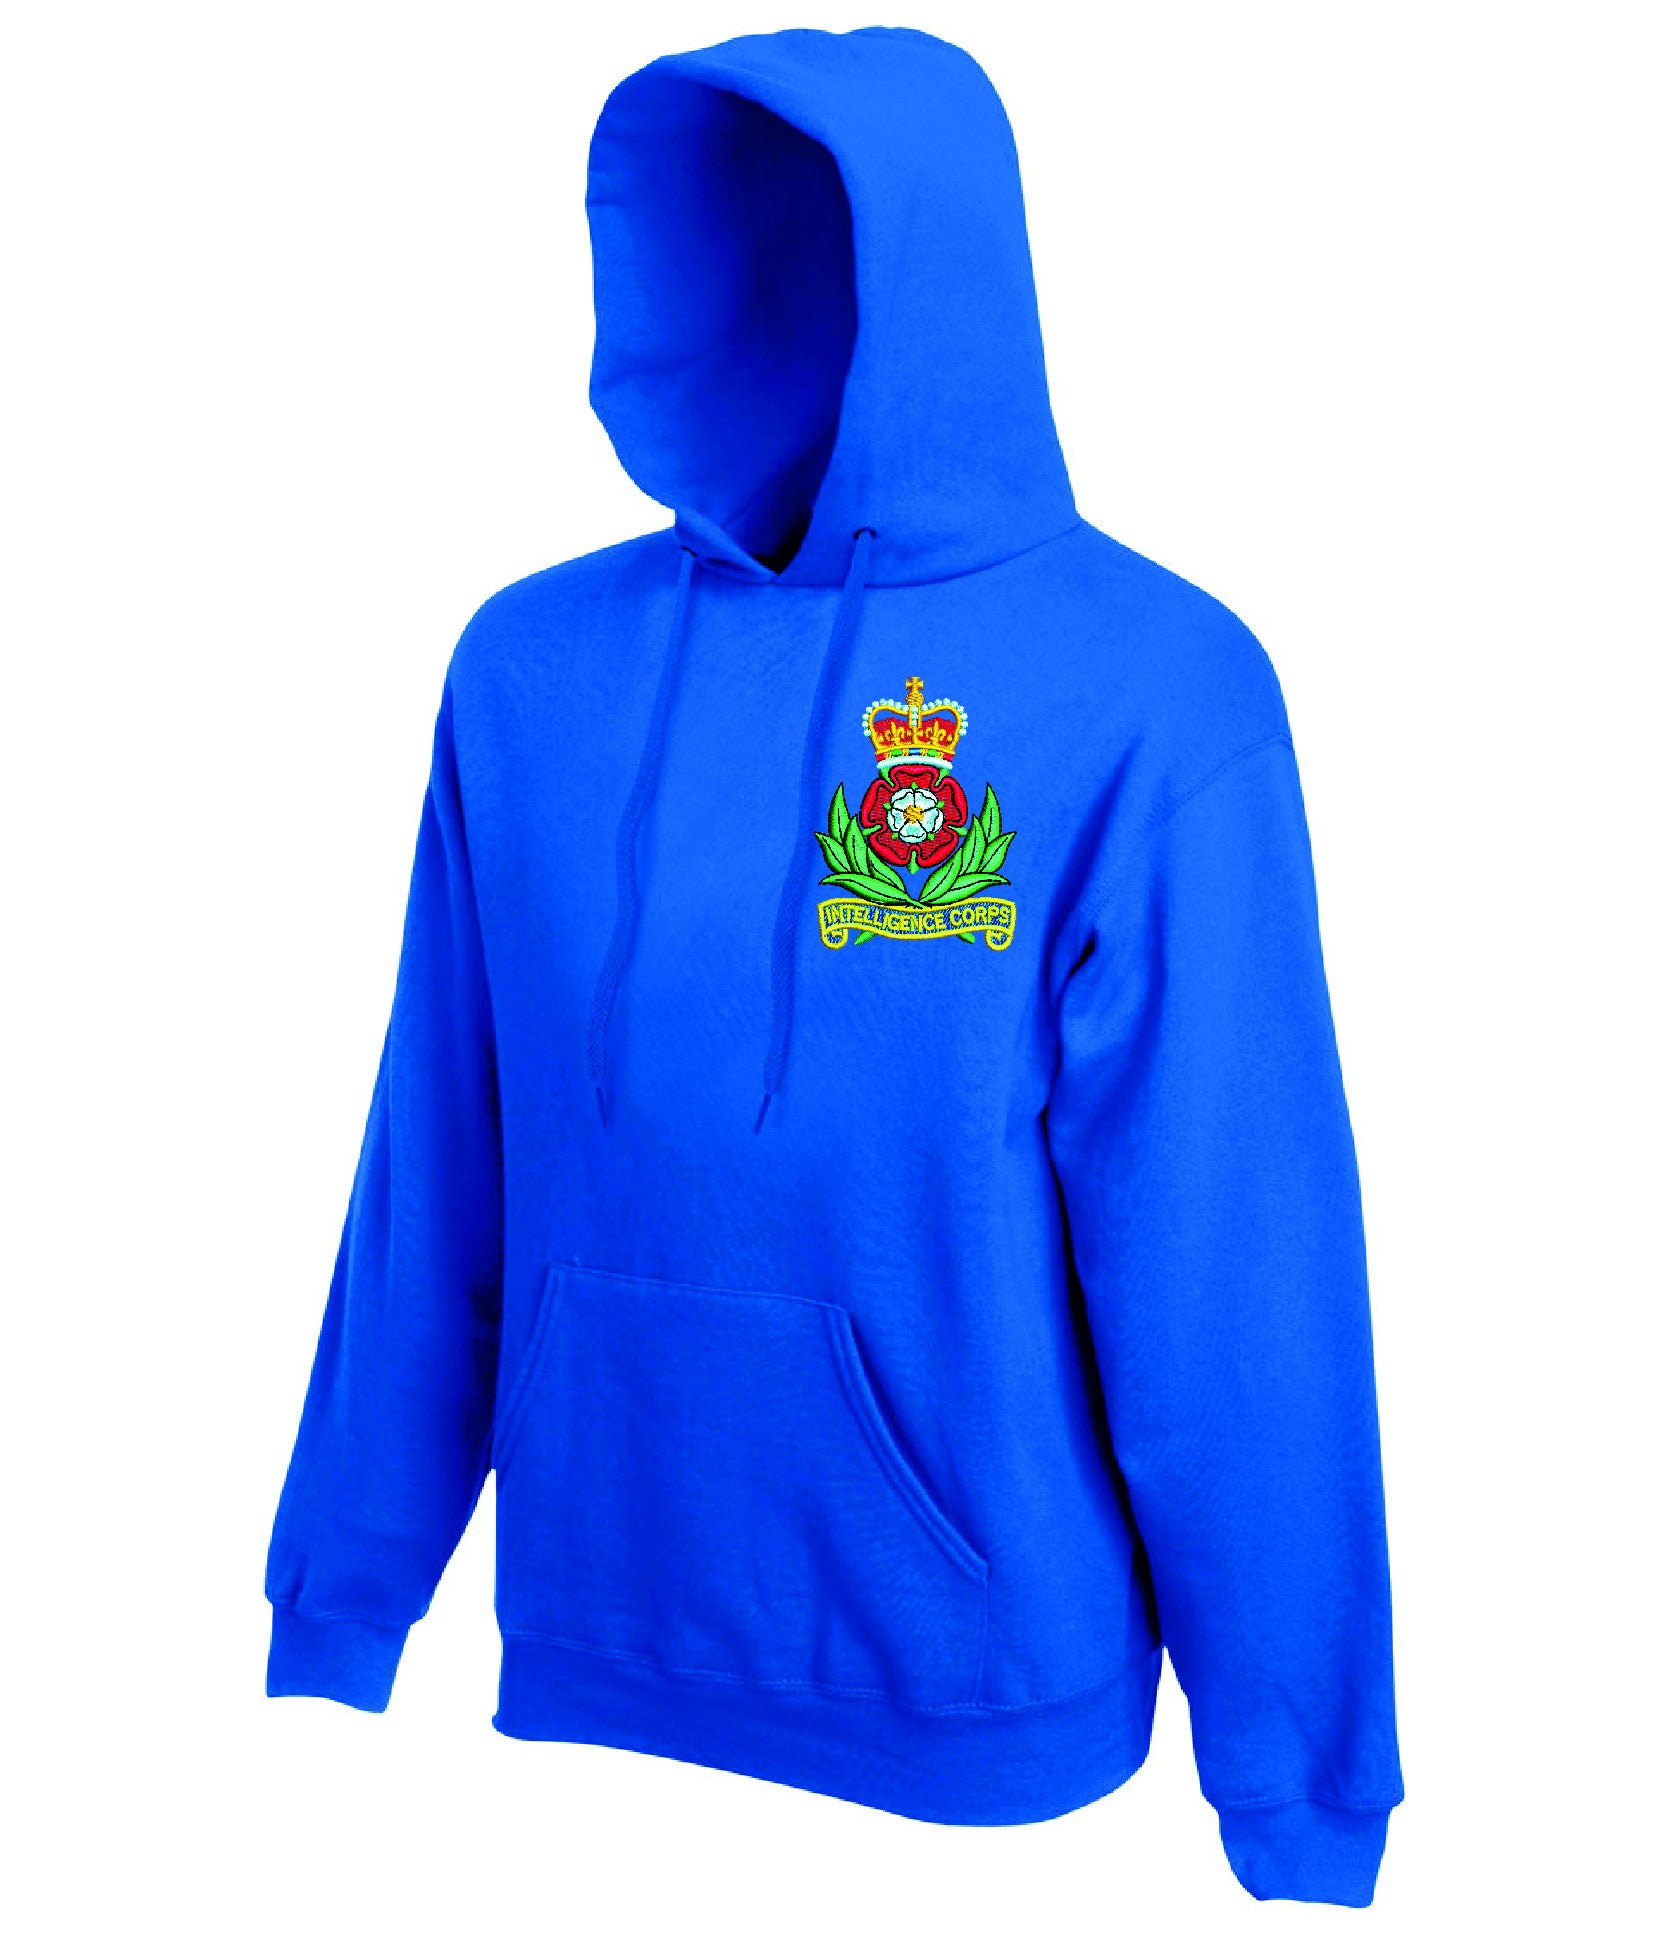 Intelligence Corps hoodie